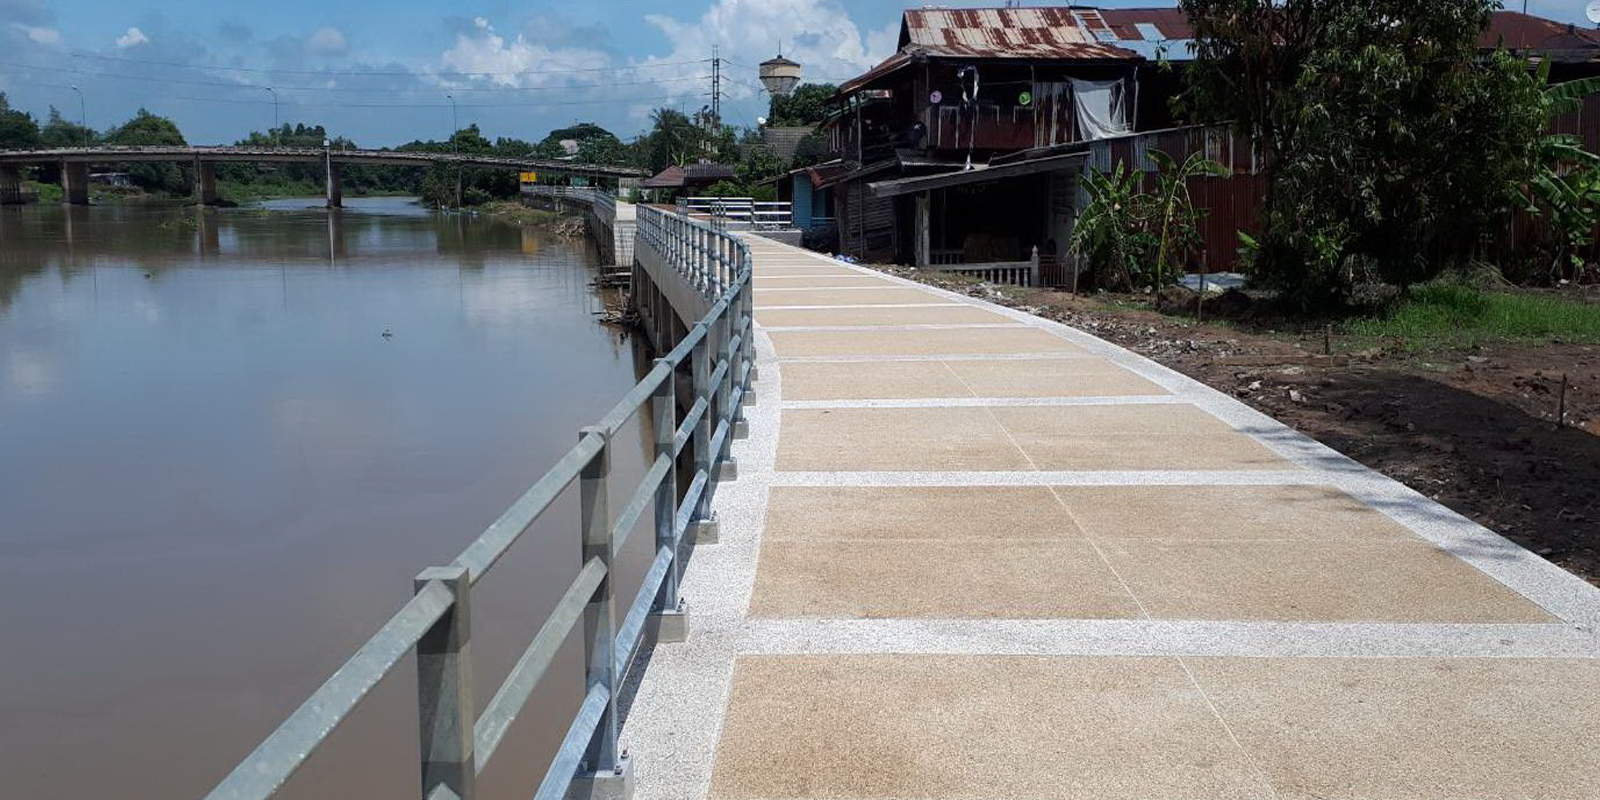 โครงการเขื่อนป้องกันตลิ่งริมแม่น้ำบางปะกง (ต่อเนื่องเขื่อนเดิม) บริเวณศาลเจ้าพ่อถึงสะพานข้ามแม่น้ำบางปะกง ม.7 